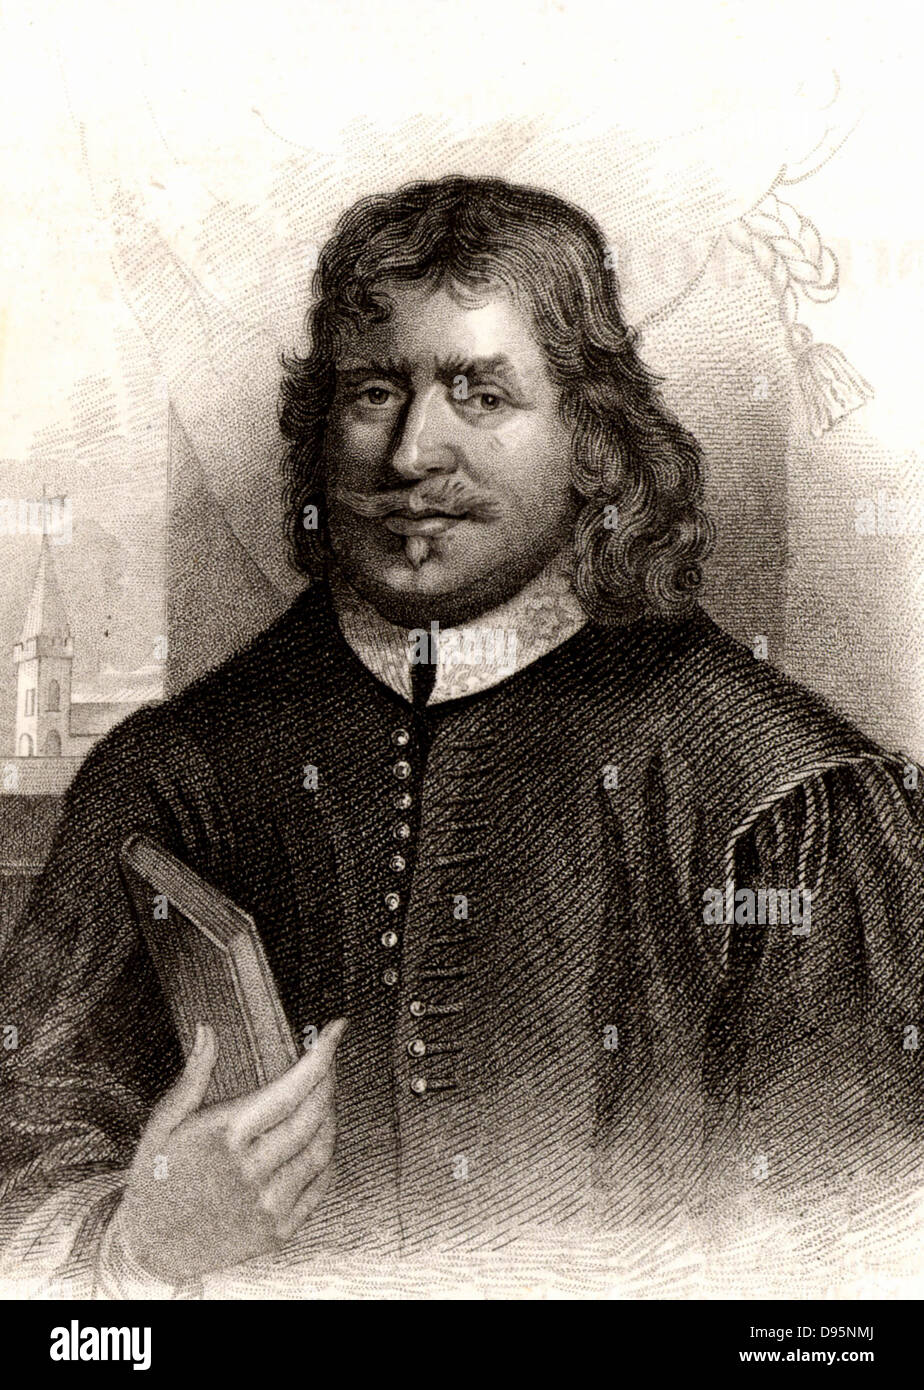 John Bunyan (1628-1688) englische puritanische Prediger.  Autor von "Pilgerreise" (London, 1678). Kupferstich, 1832. Stockfoto